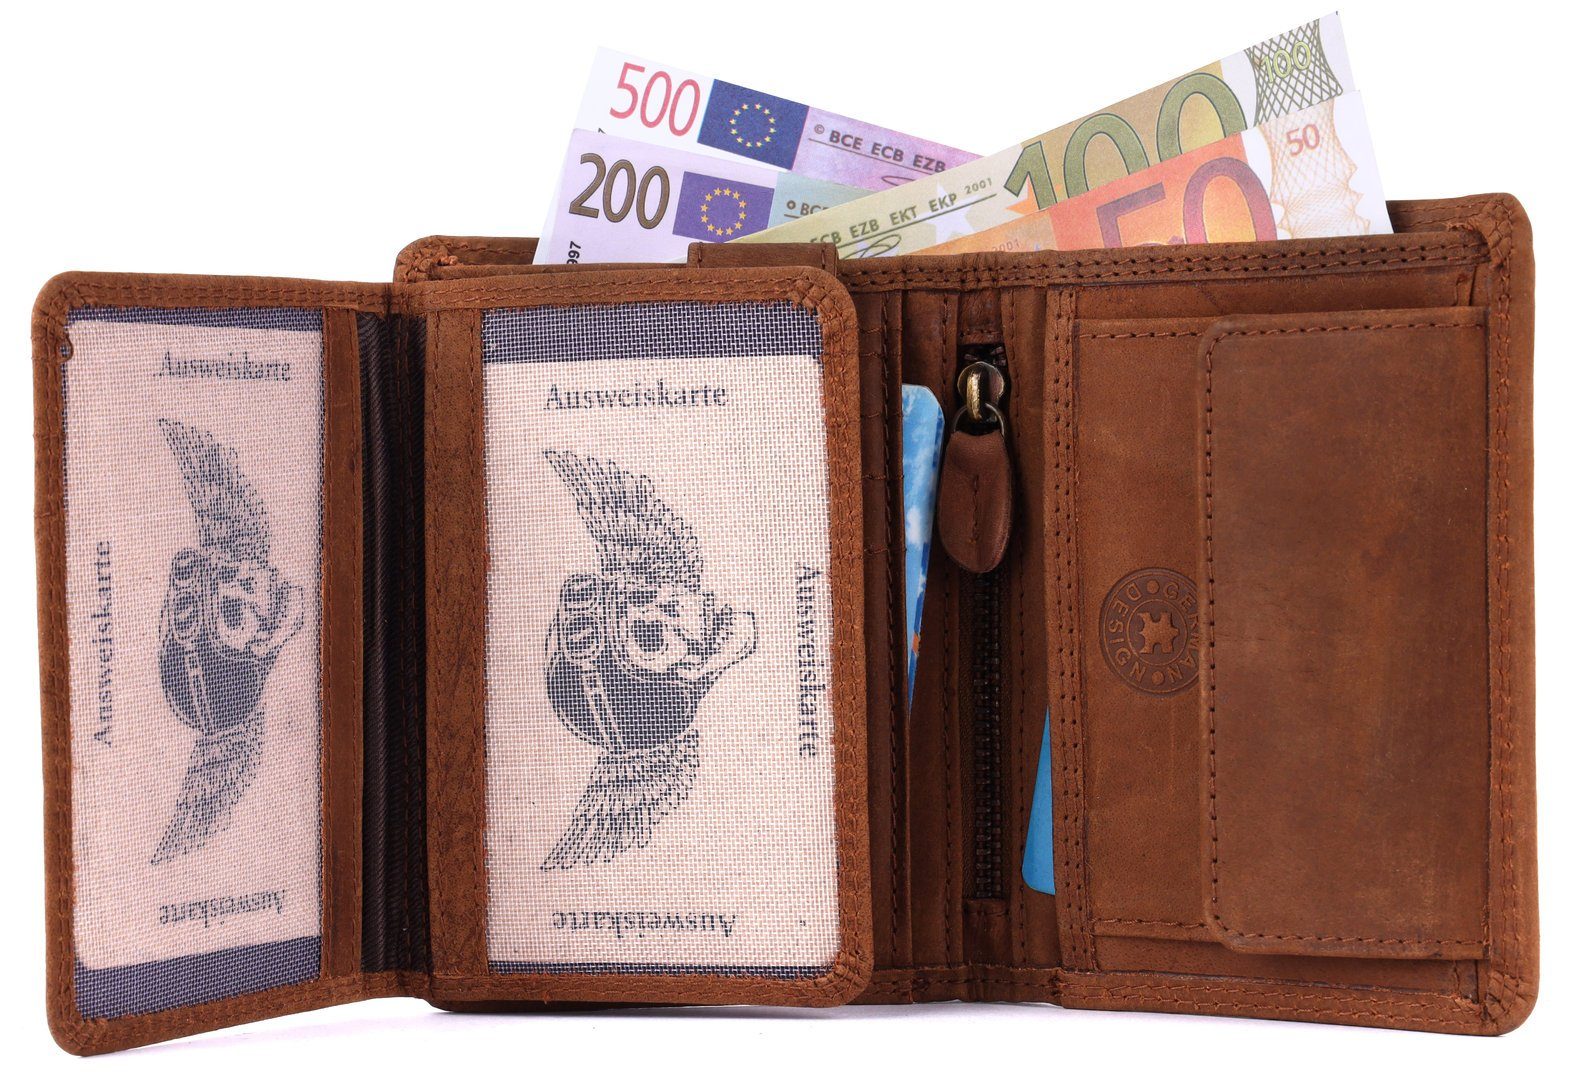 Börse Geldbörse Portemonnaie, mit Herren Lederbörse Büffelleder Schutz SHG RFID Leder Brieftasche Münzfach Männerbörse